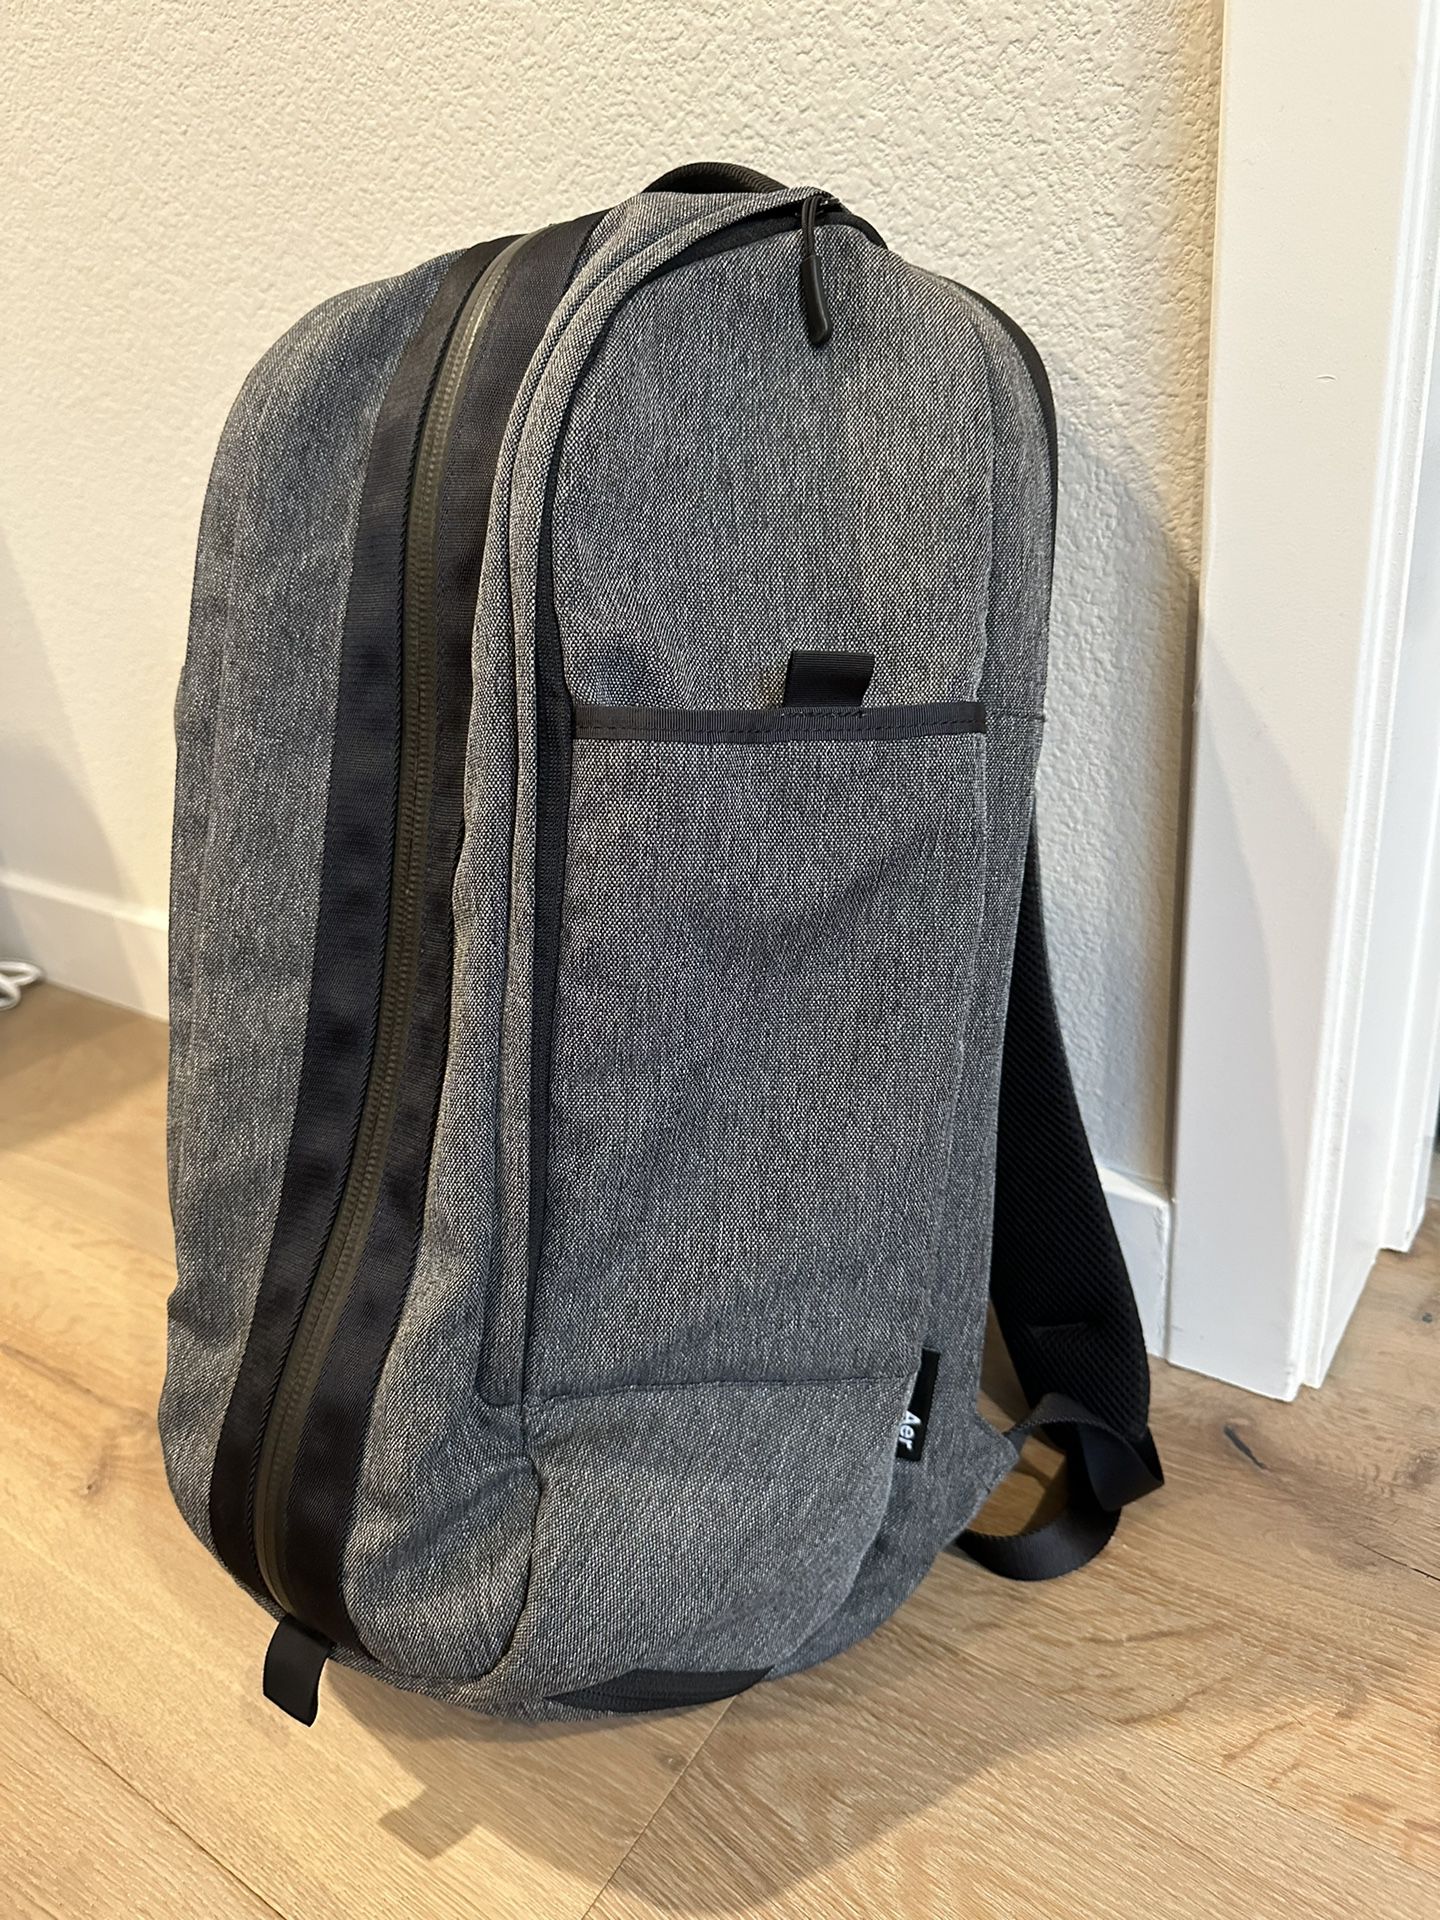 Aer SF Duffel Pack 1 Backpack Bag